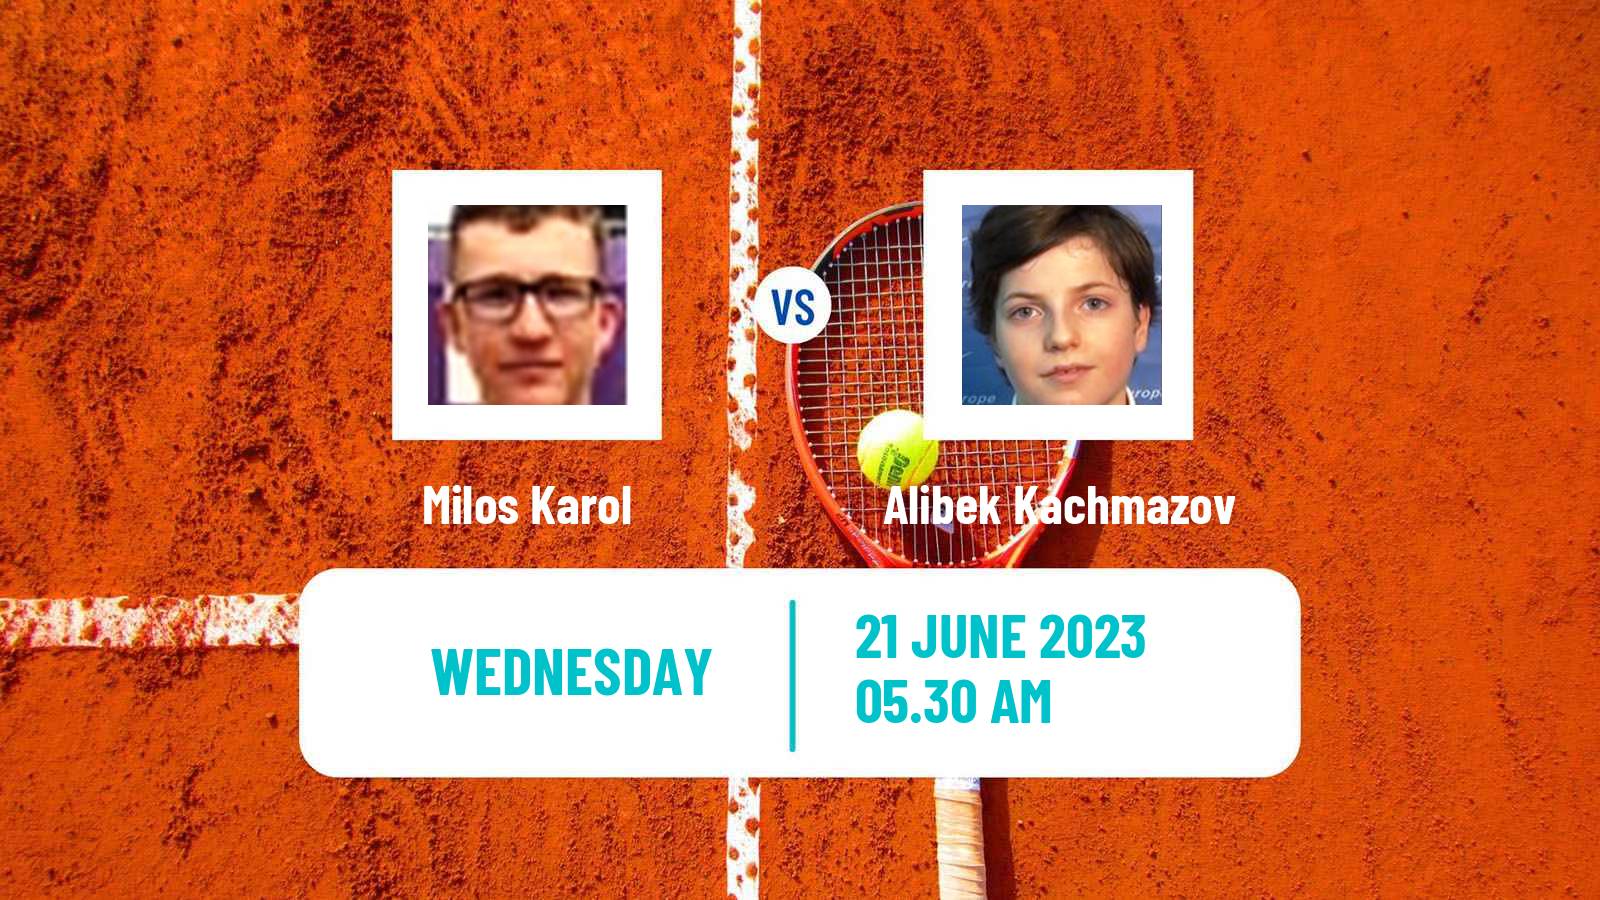 Tennis ITF M25 Poprad Men Milos Karol - Alibek Kachmazov